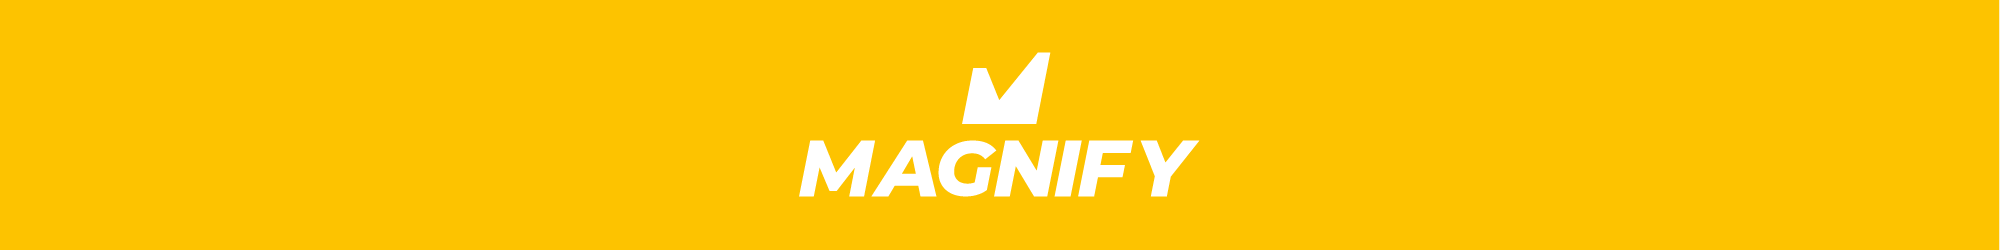 Magnify-Header